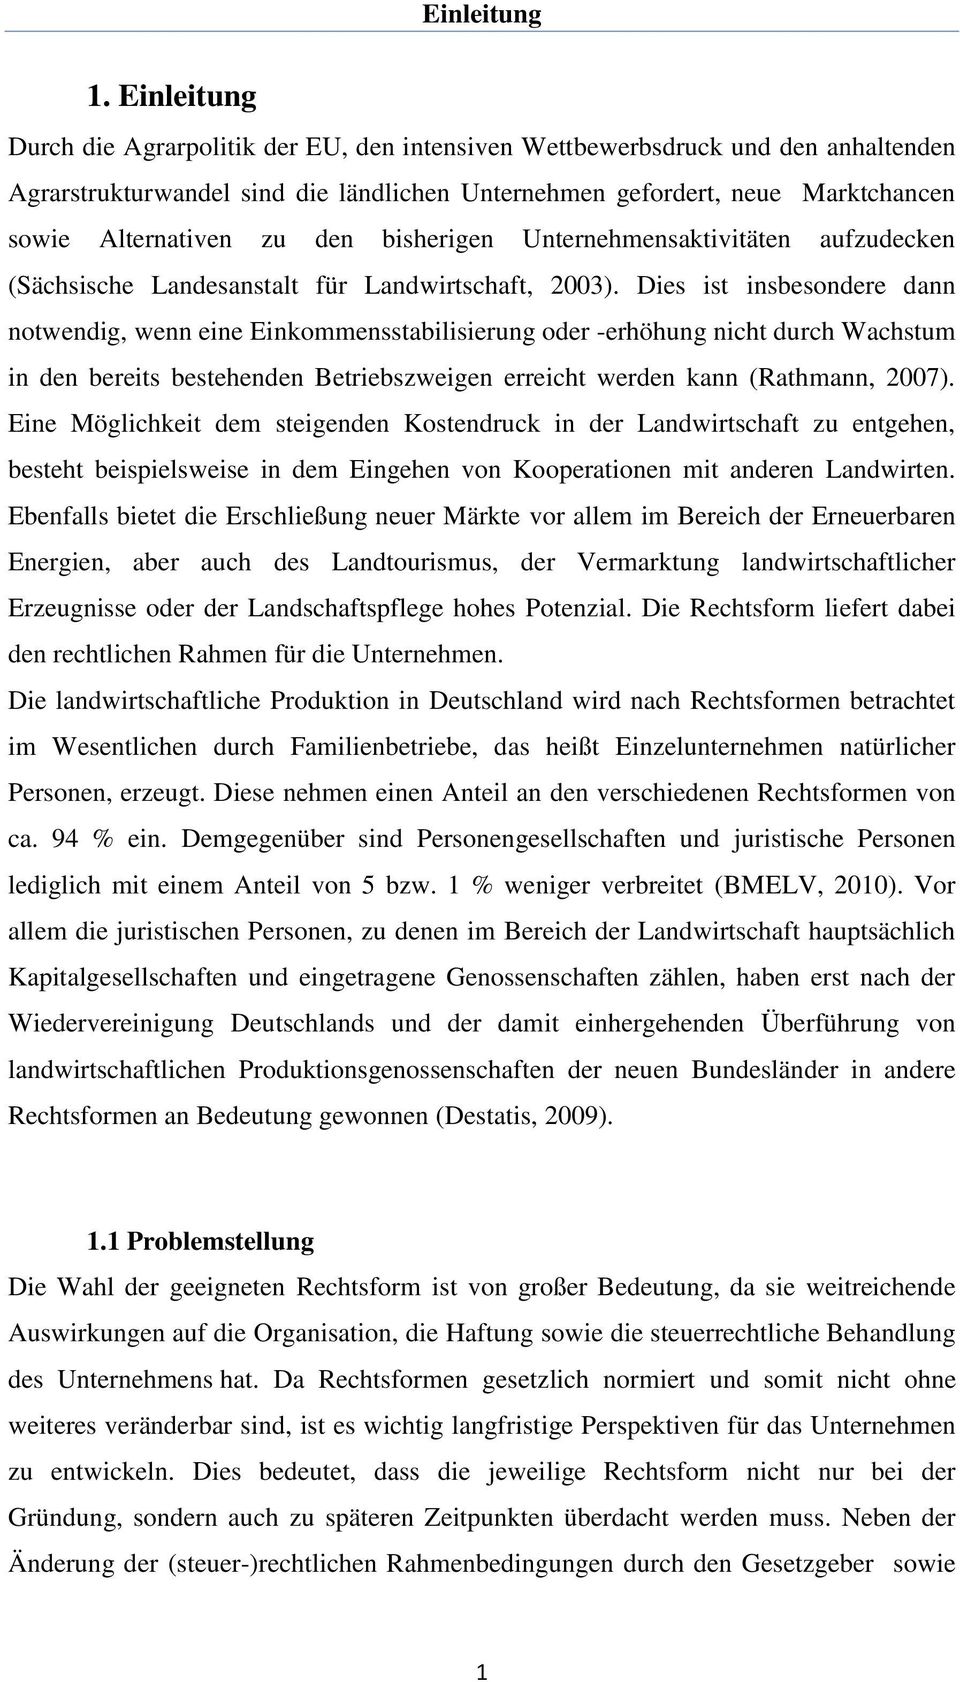 den bisherigen Unternehmensaktivitäten aufzudecken (Sächsische Landesanstalt für Landwirtschaft, 2003).